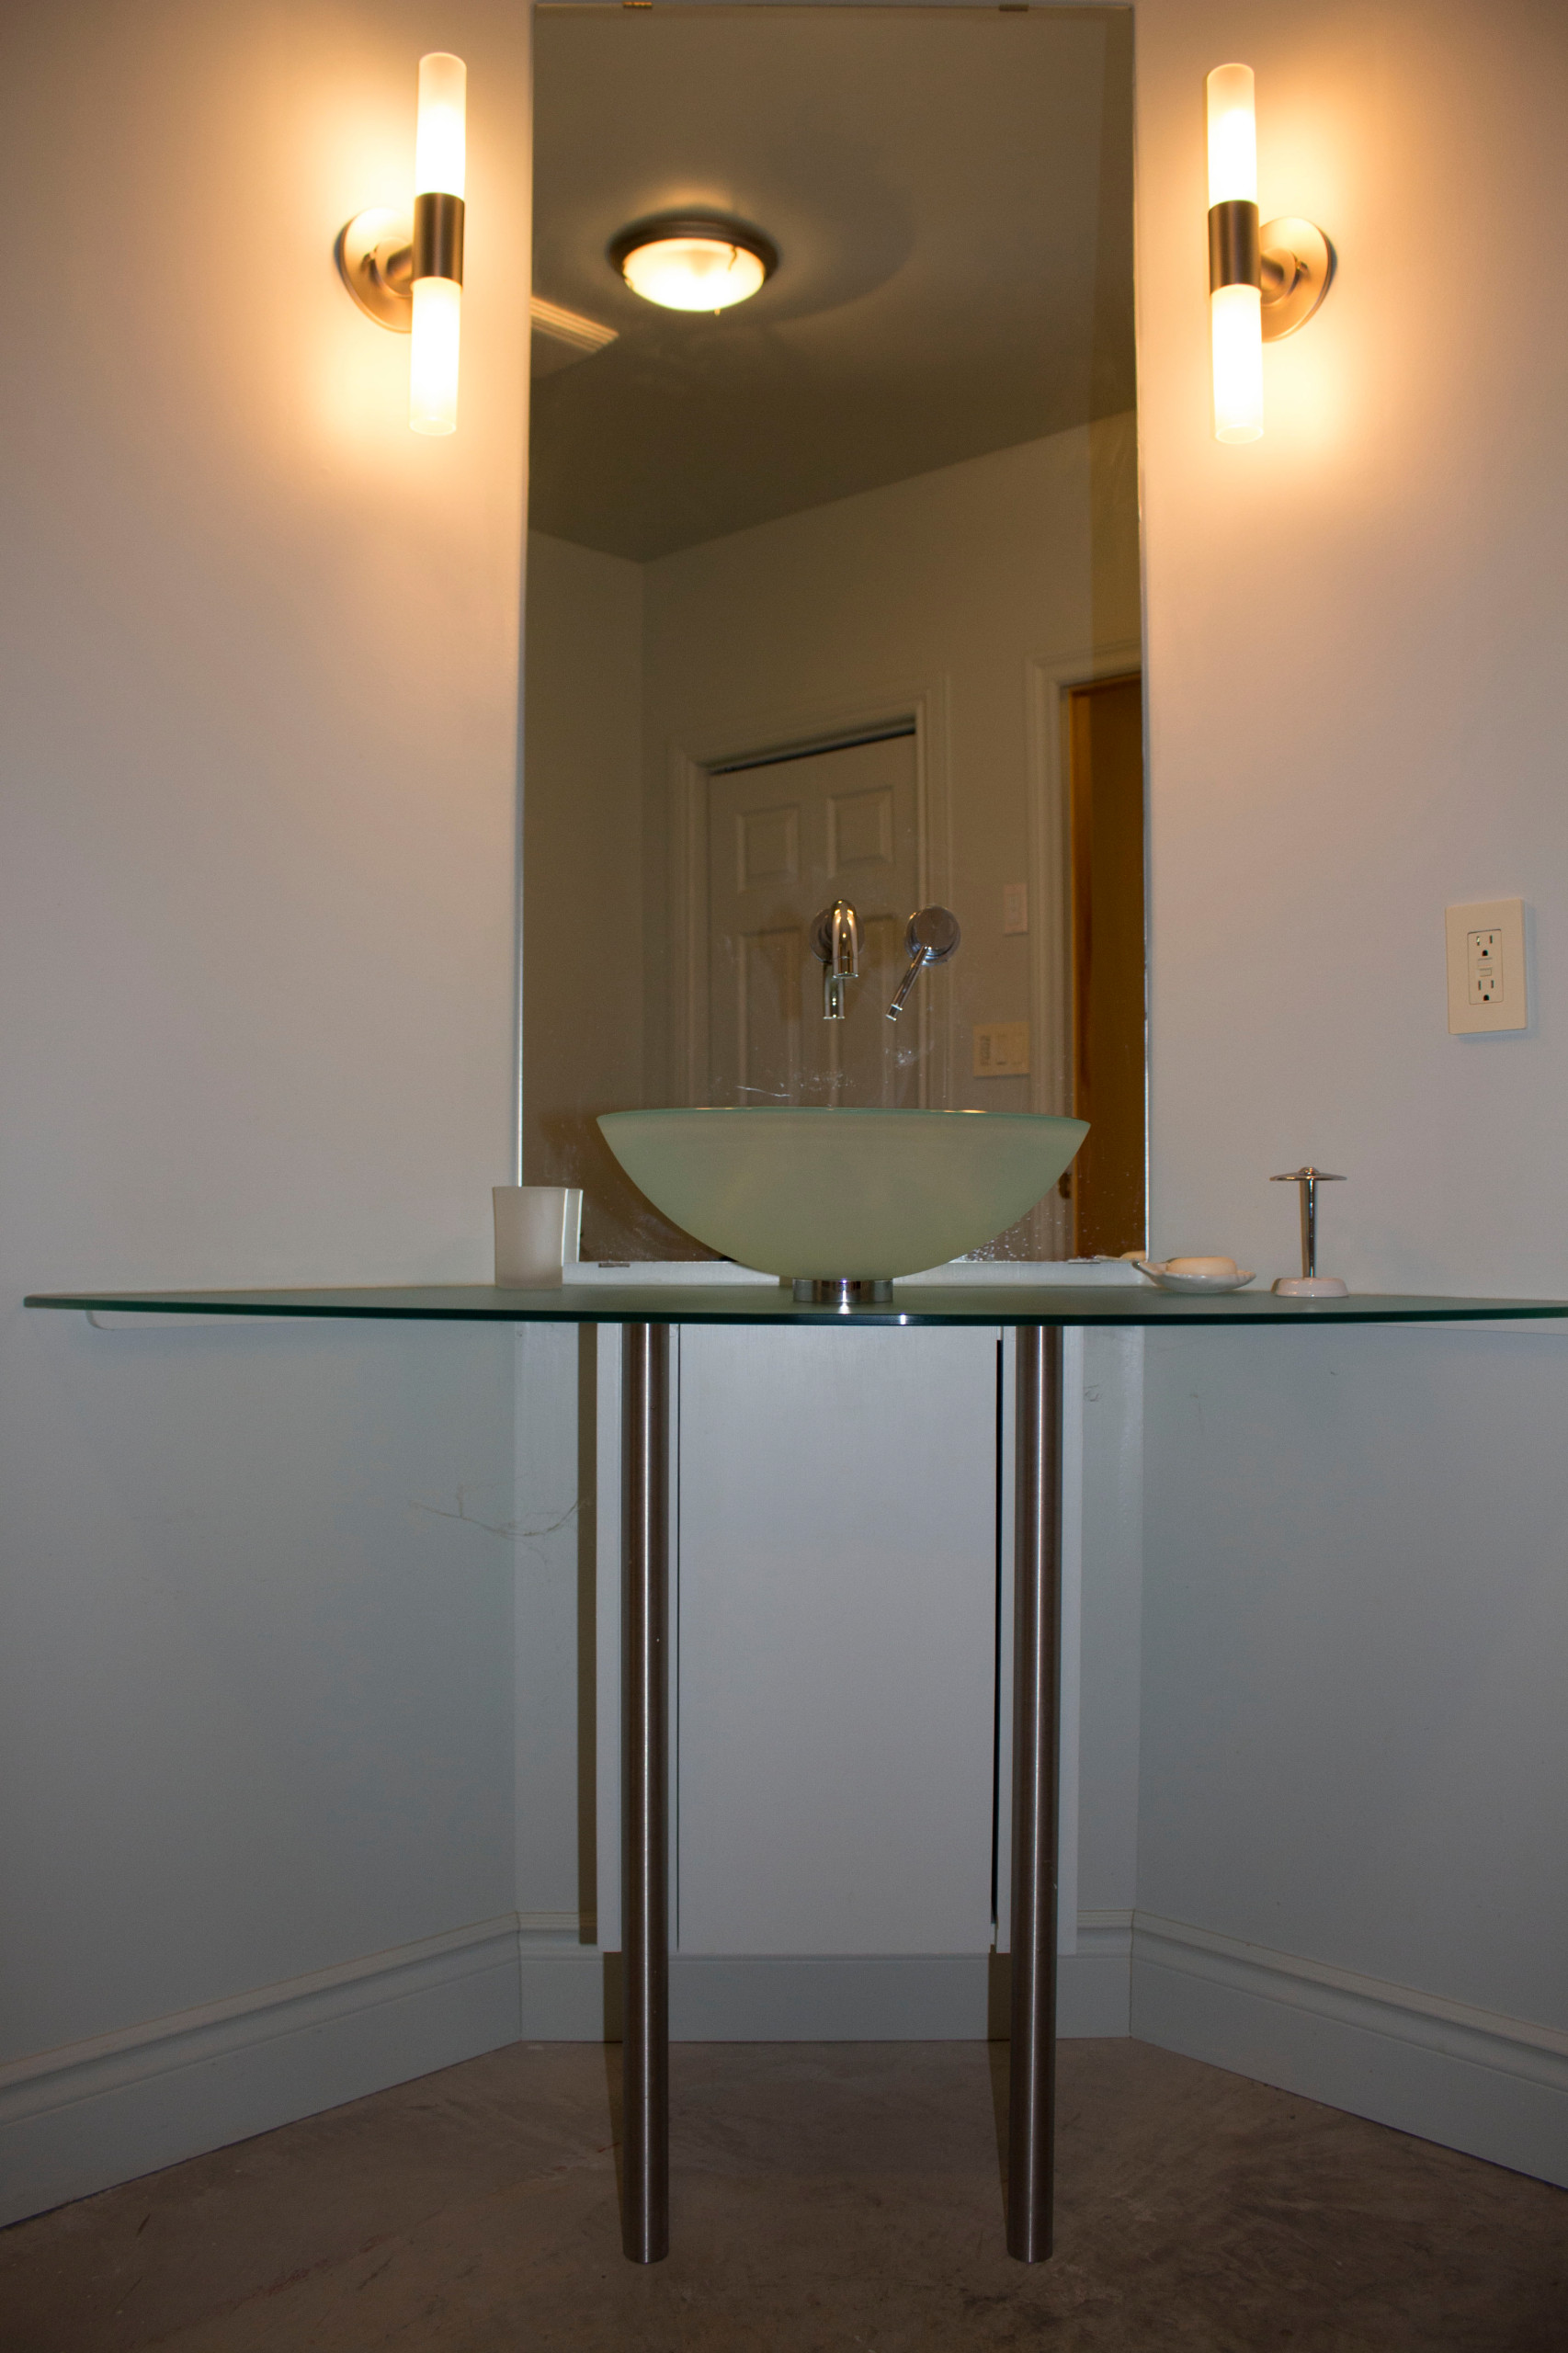 trailhead, kingston bathroom vanity design